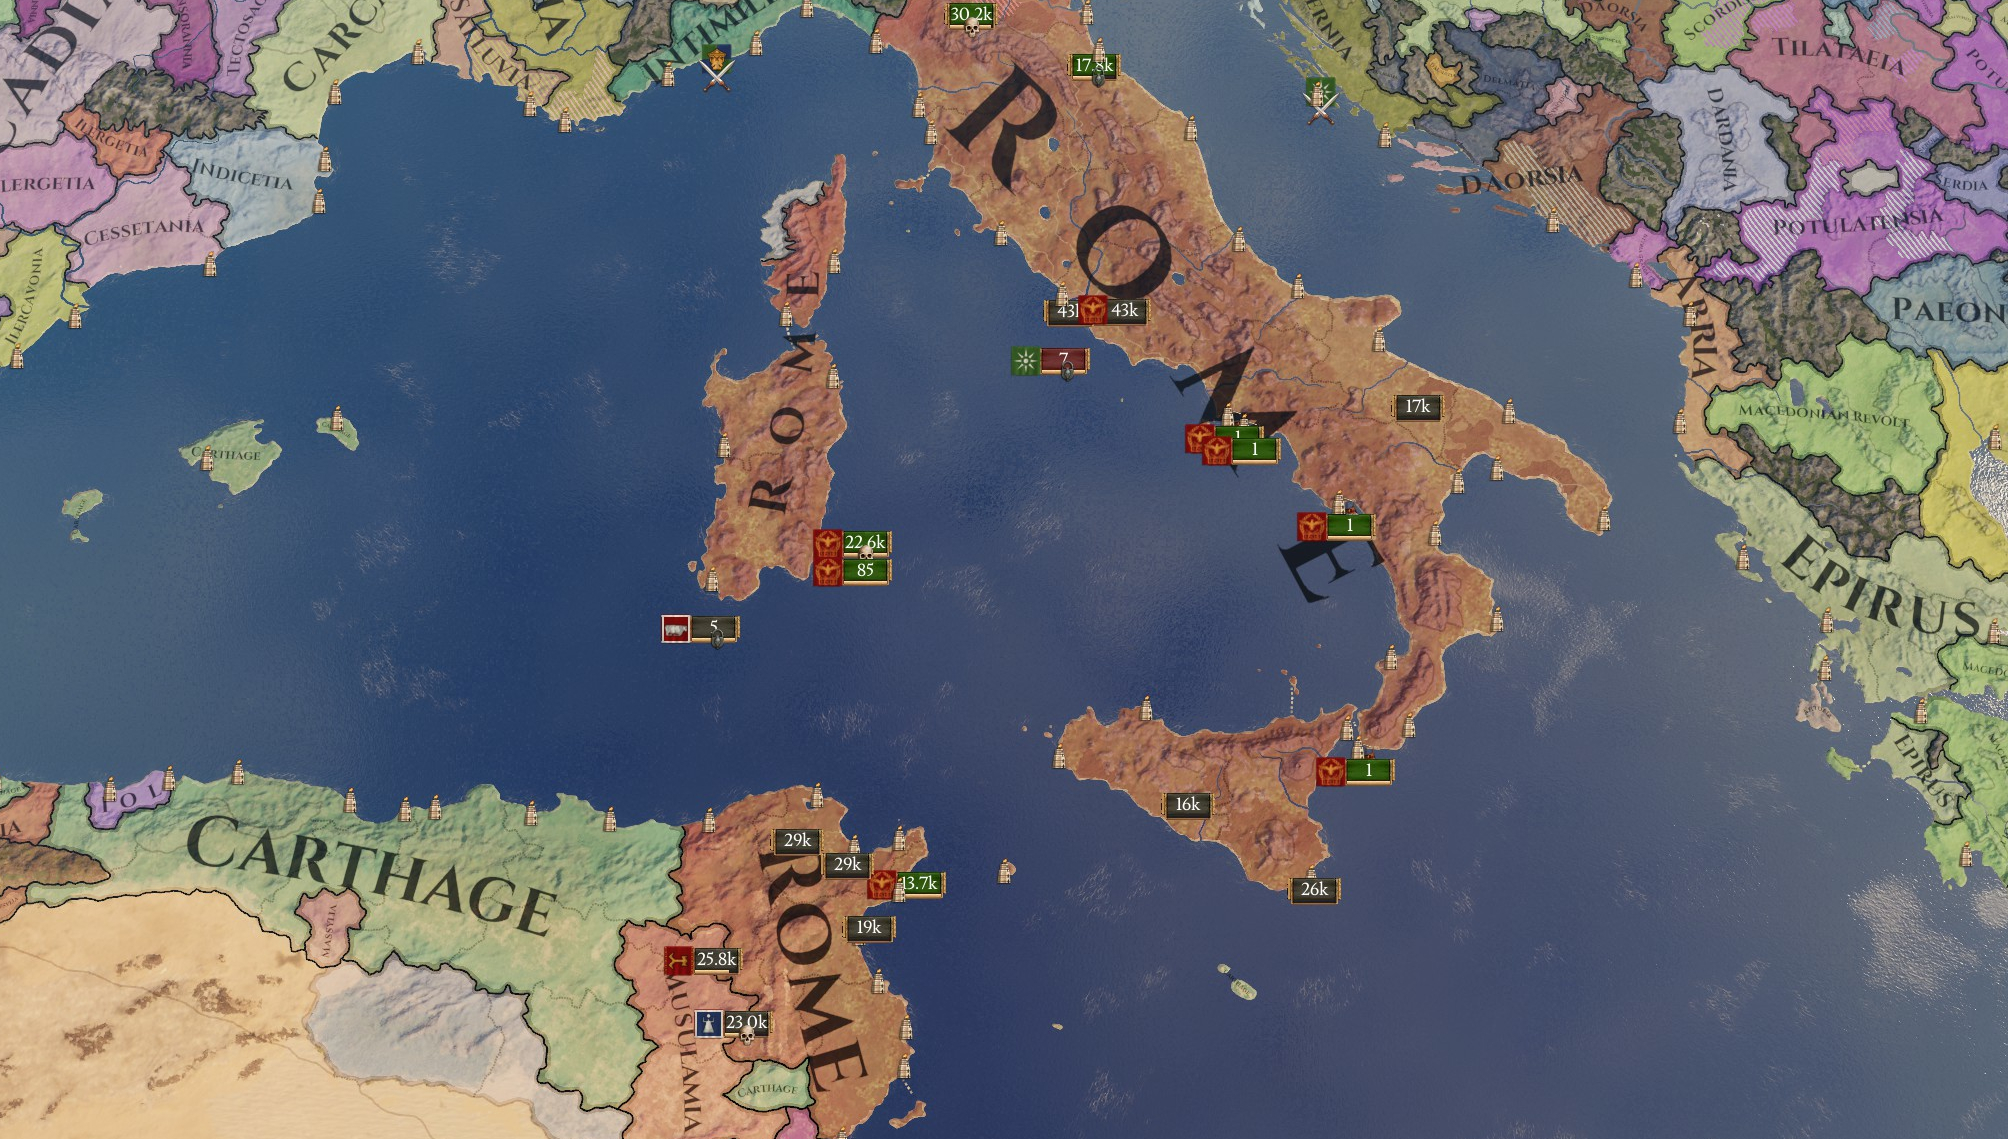 imperator rome 2.0